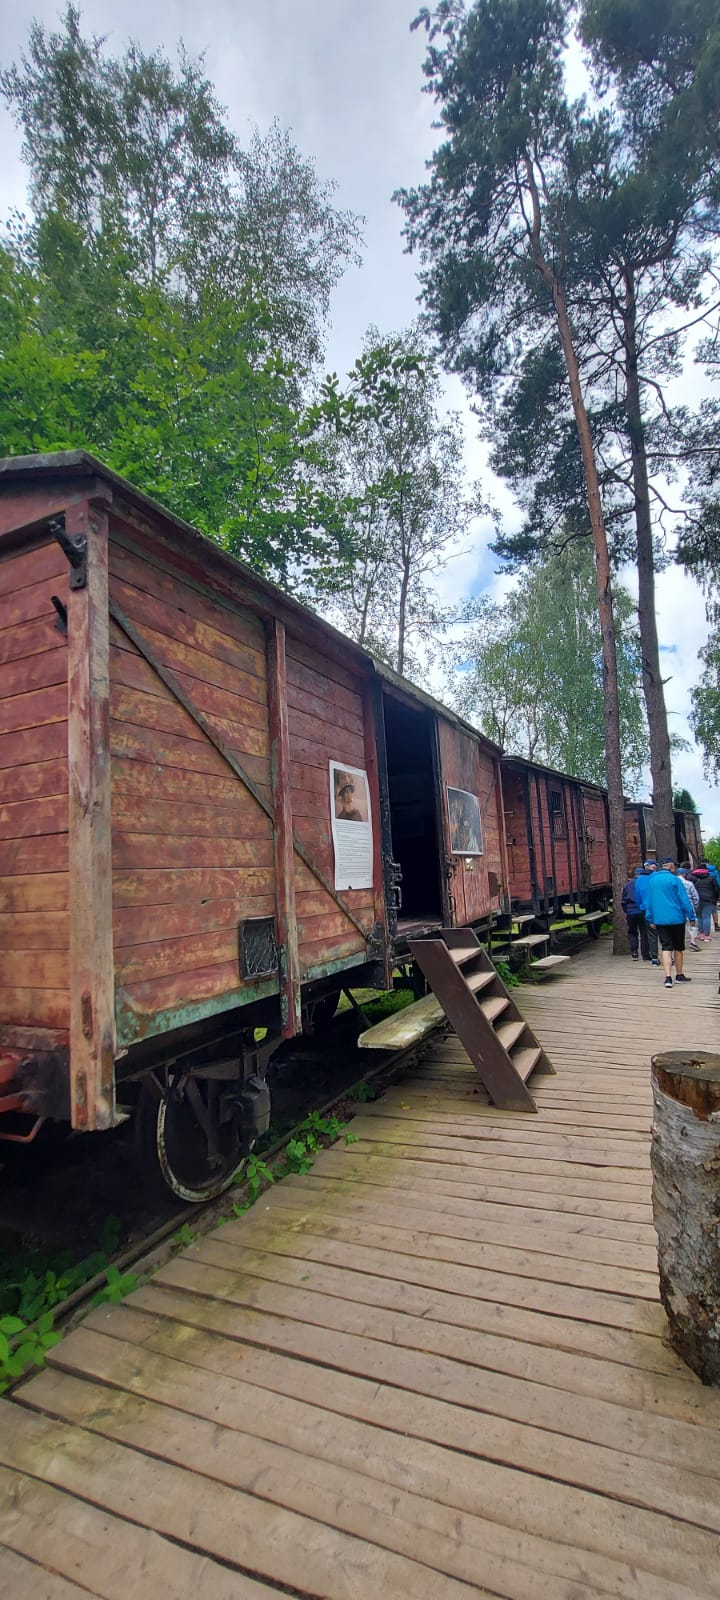 Drewniane wagony kolejowe stojące na szynach. Do wagonów można wejść. Wzdłuż nich idzie grupa wycieczkowa.